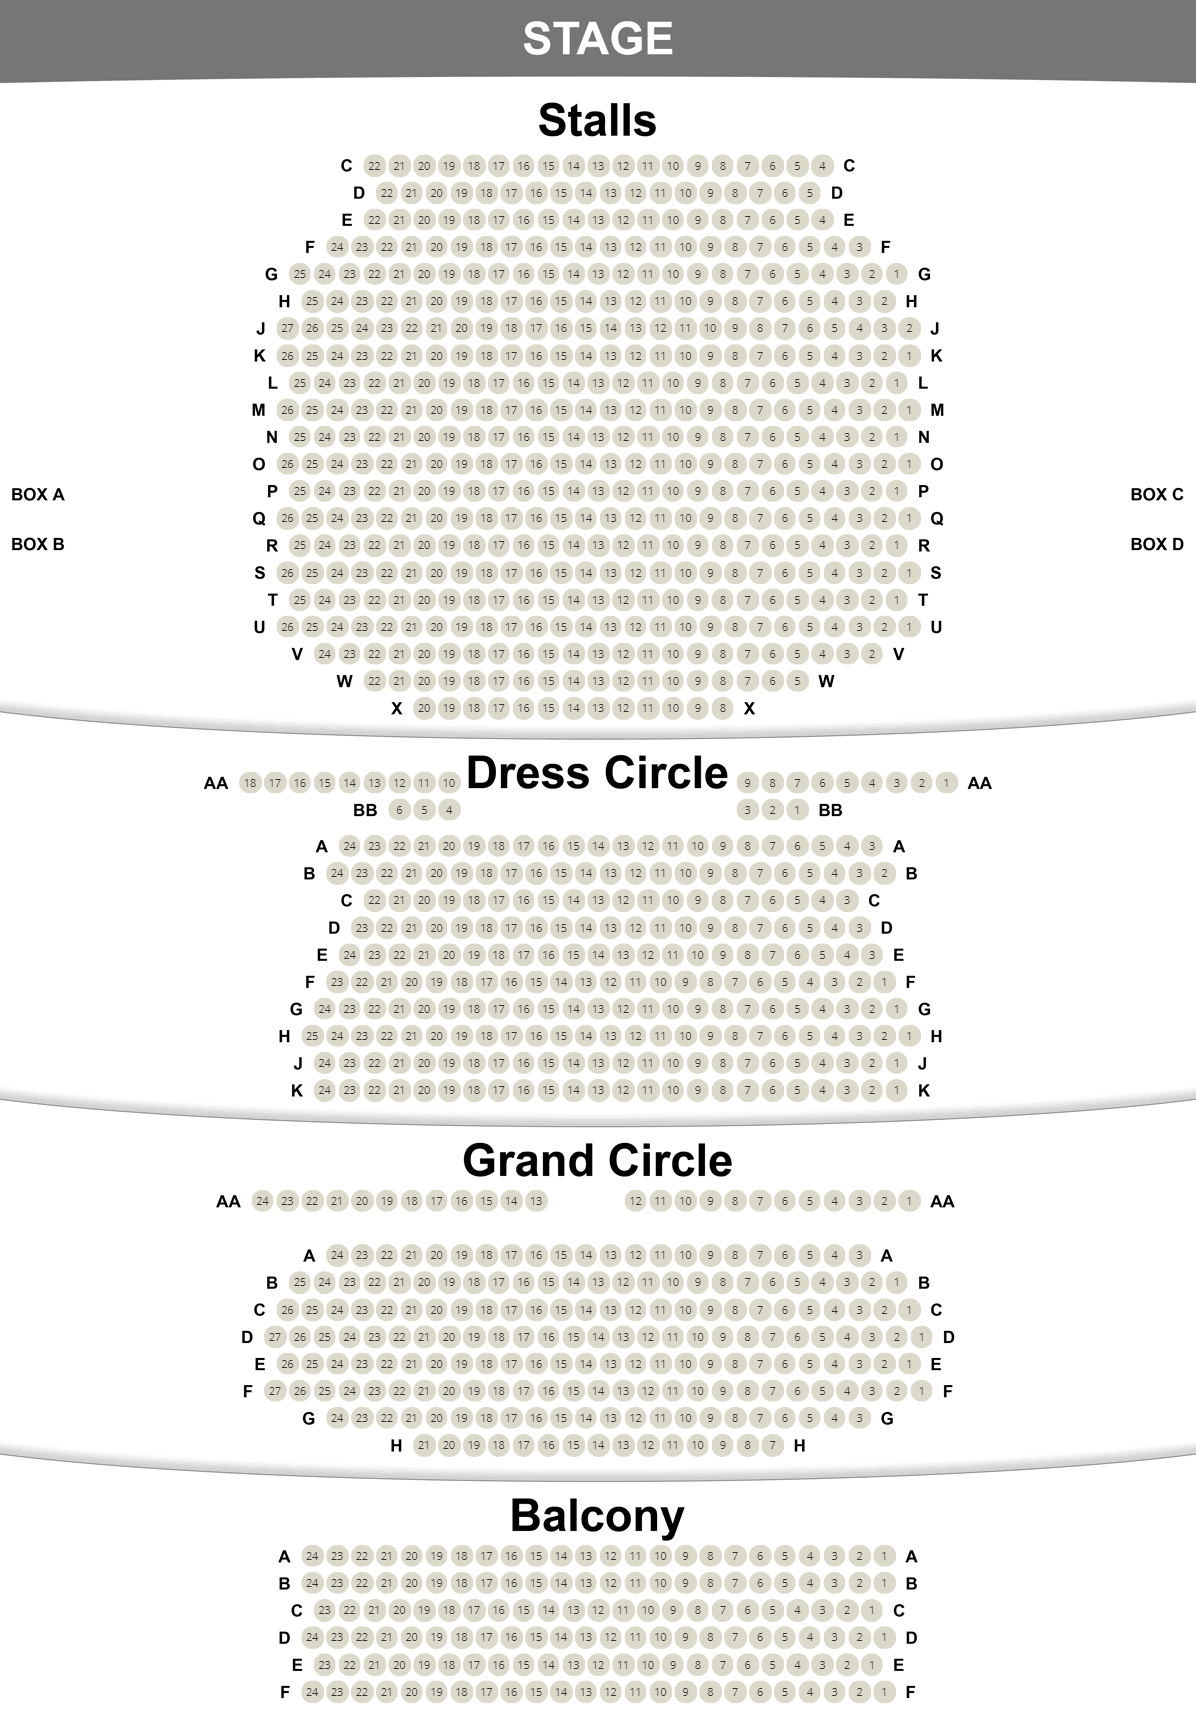 Novello Theatre seating plan